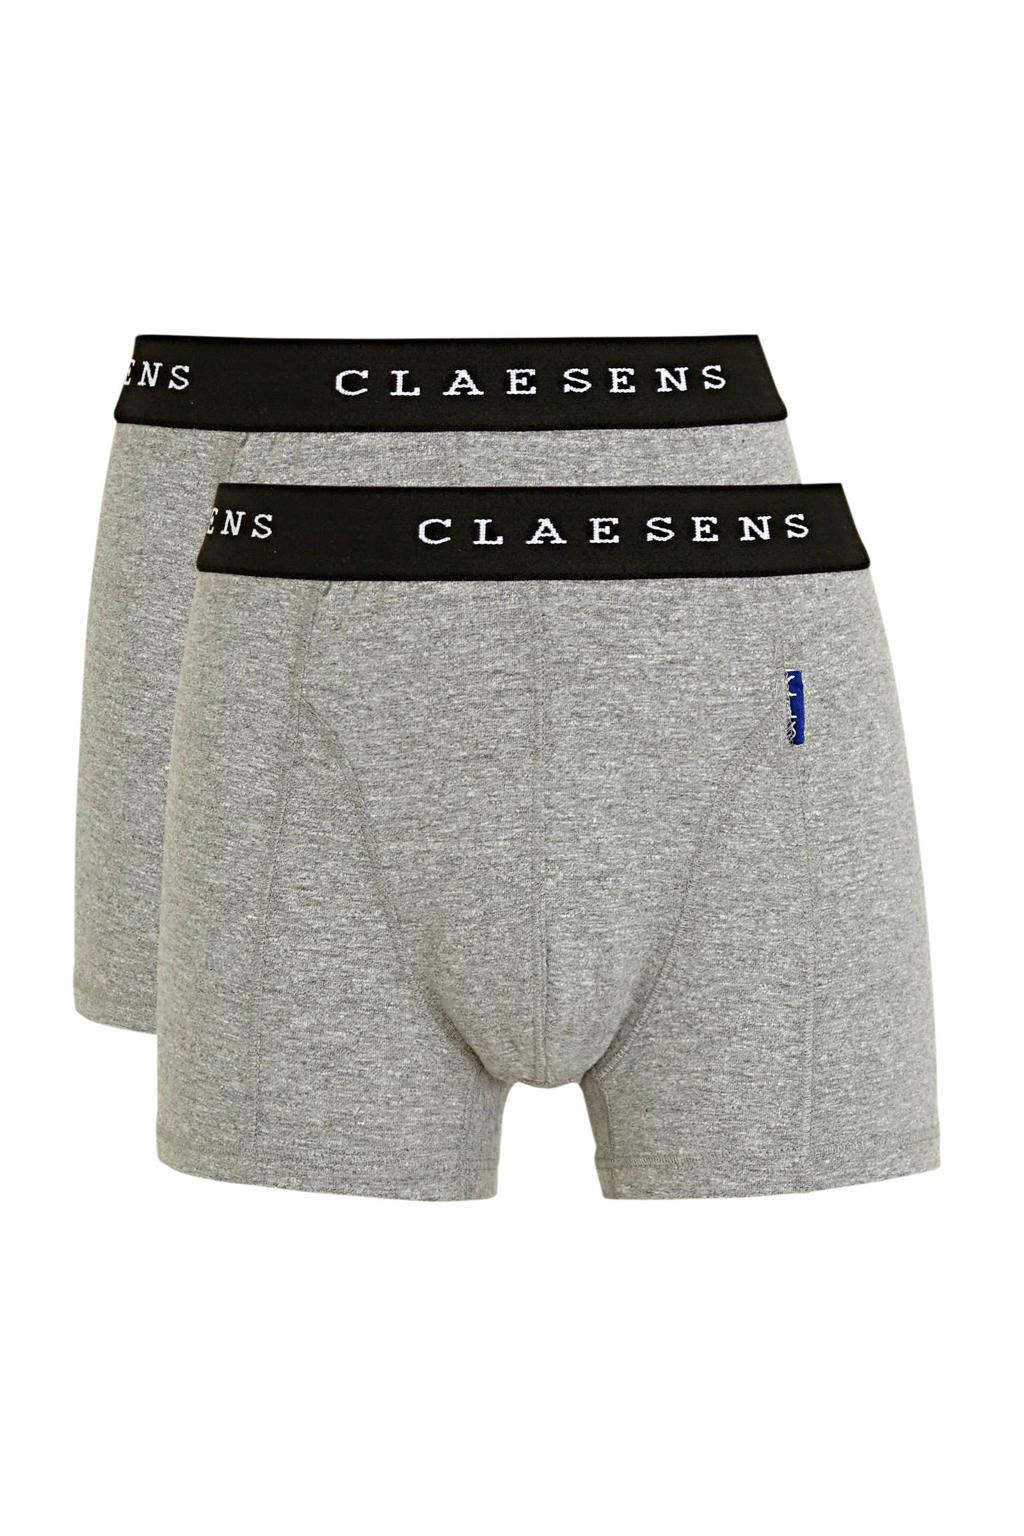 Claesen's   boxershort - set van 2 grijs melange/wit